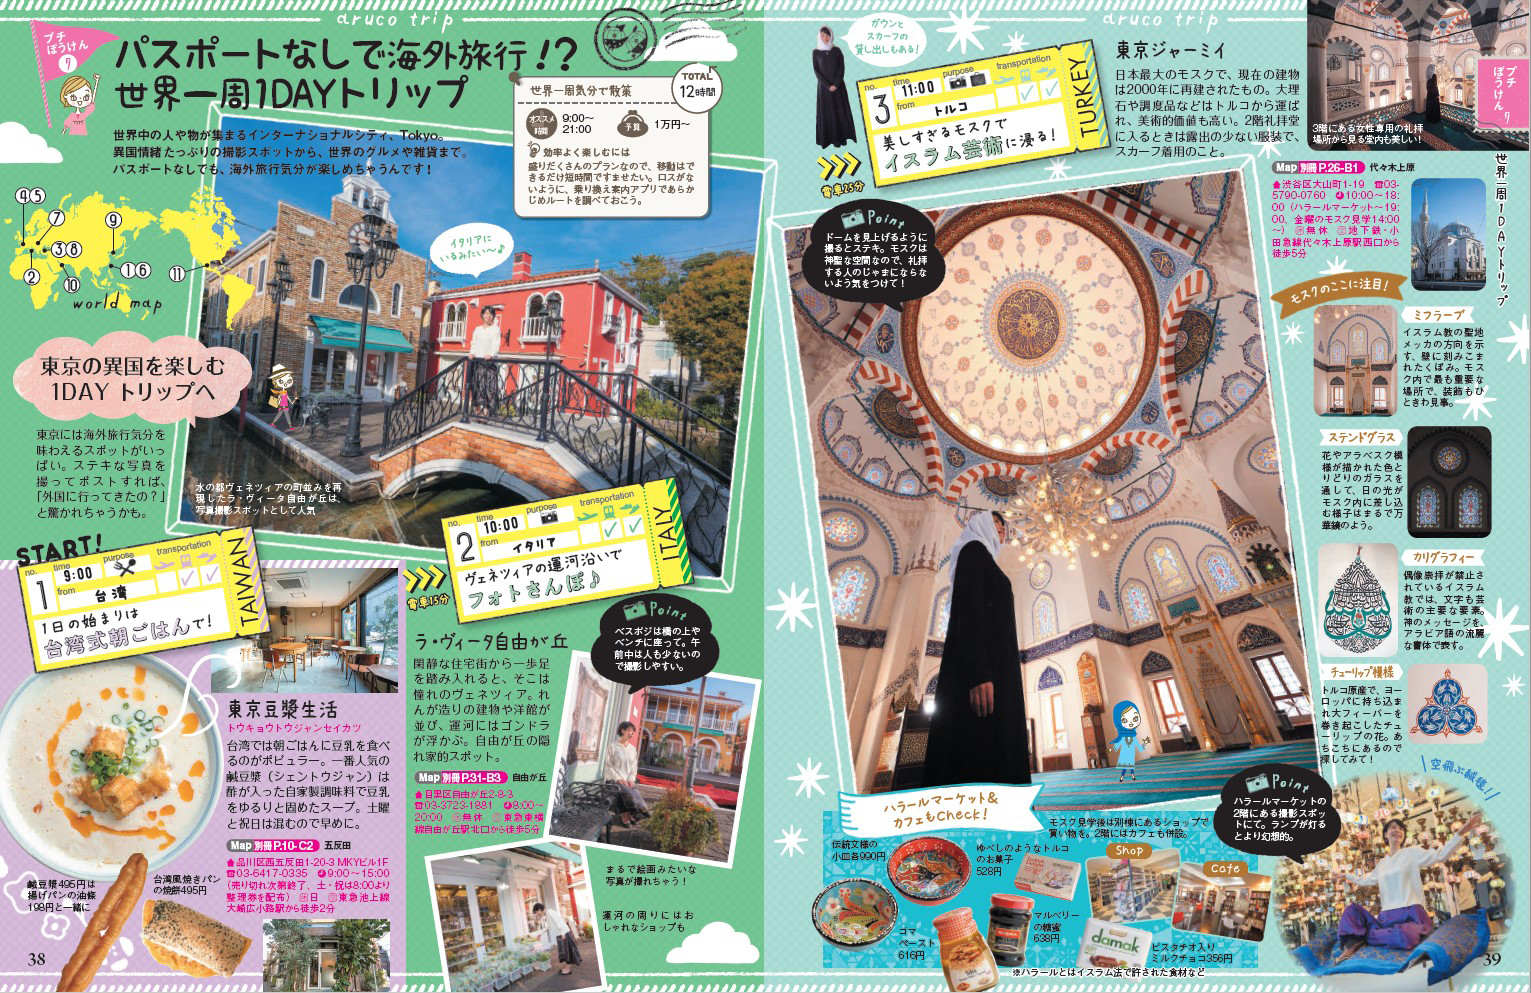 「海外旅行気分に浸れる散策プランから東京ならではの江戸文化体験まで」紙面